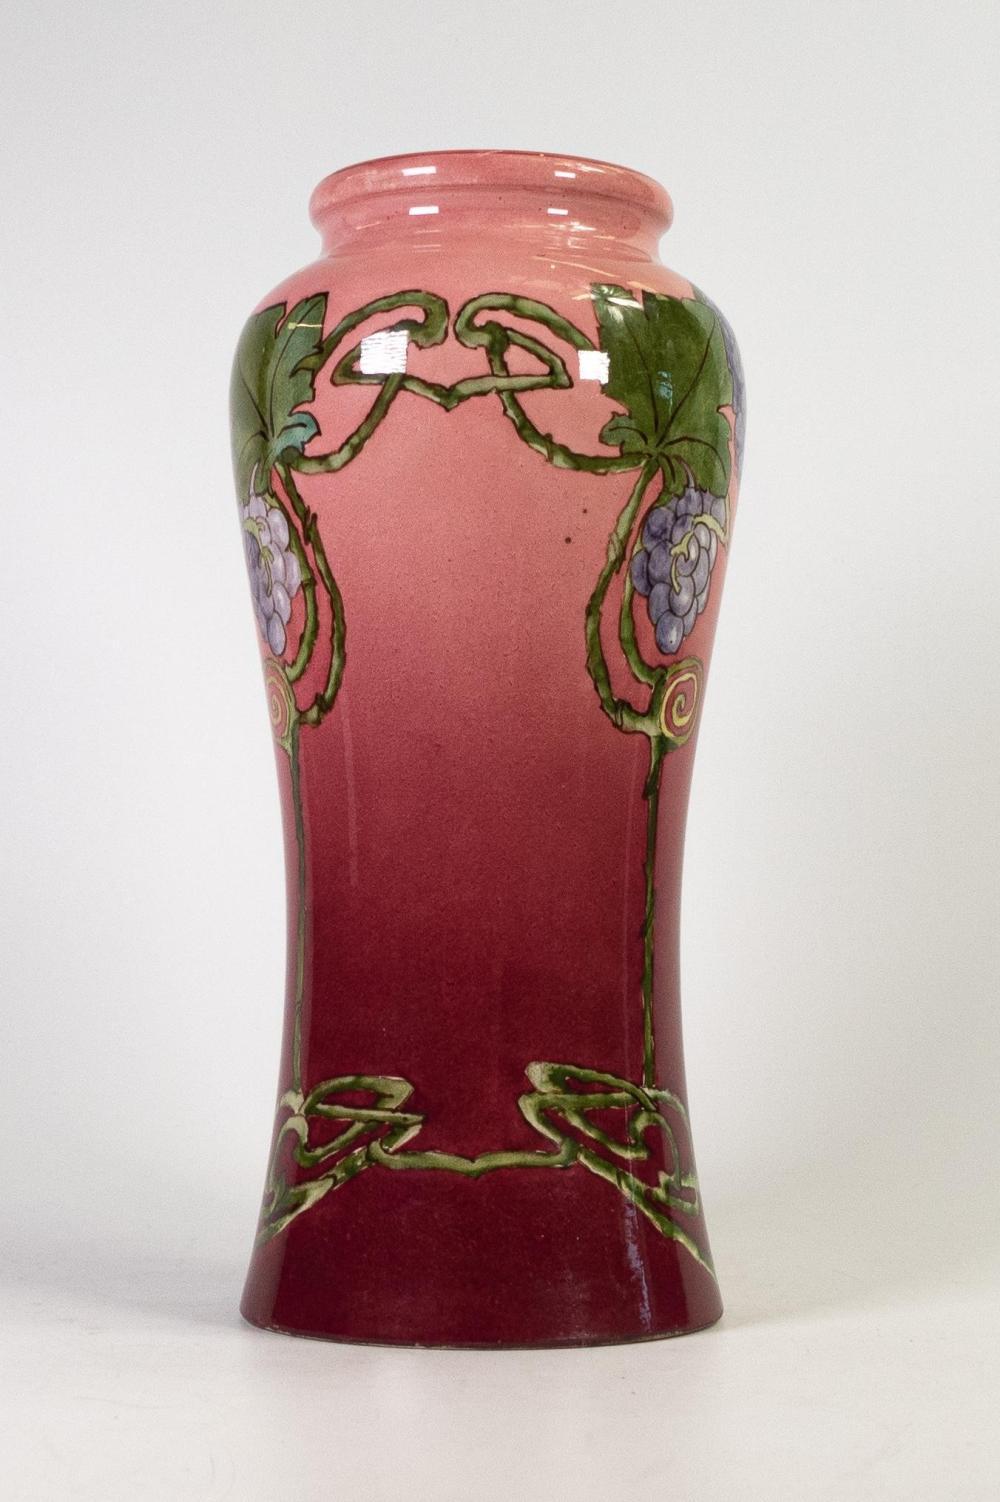 Vase aus Lambeth-Fayence im Stil ART NOUVEAU von DOULTON. Rosa. Um 1900. 

Prächtige stilisierte Jugendstilblumen auf einem  rosa Vase von Doulton Lambeth Fayence. Großes Format und farbenfrohes Kunstwerk. 